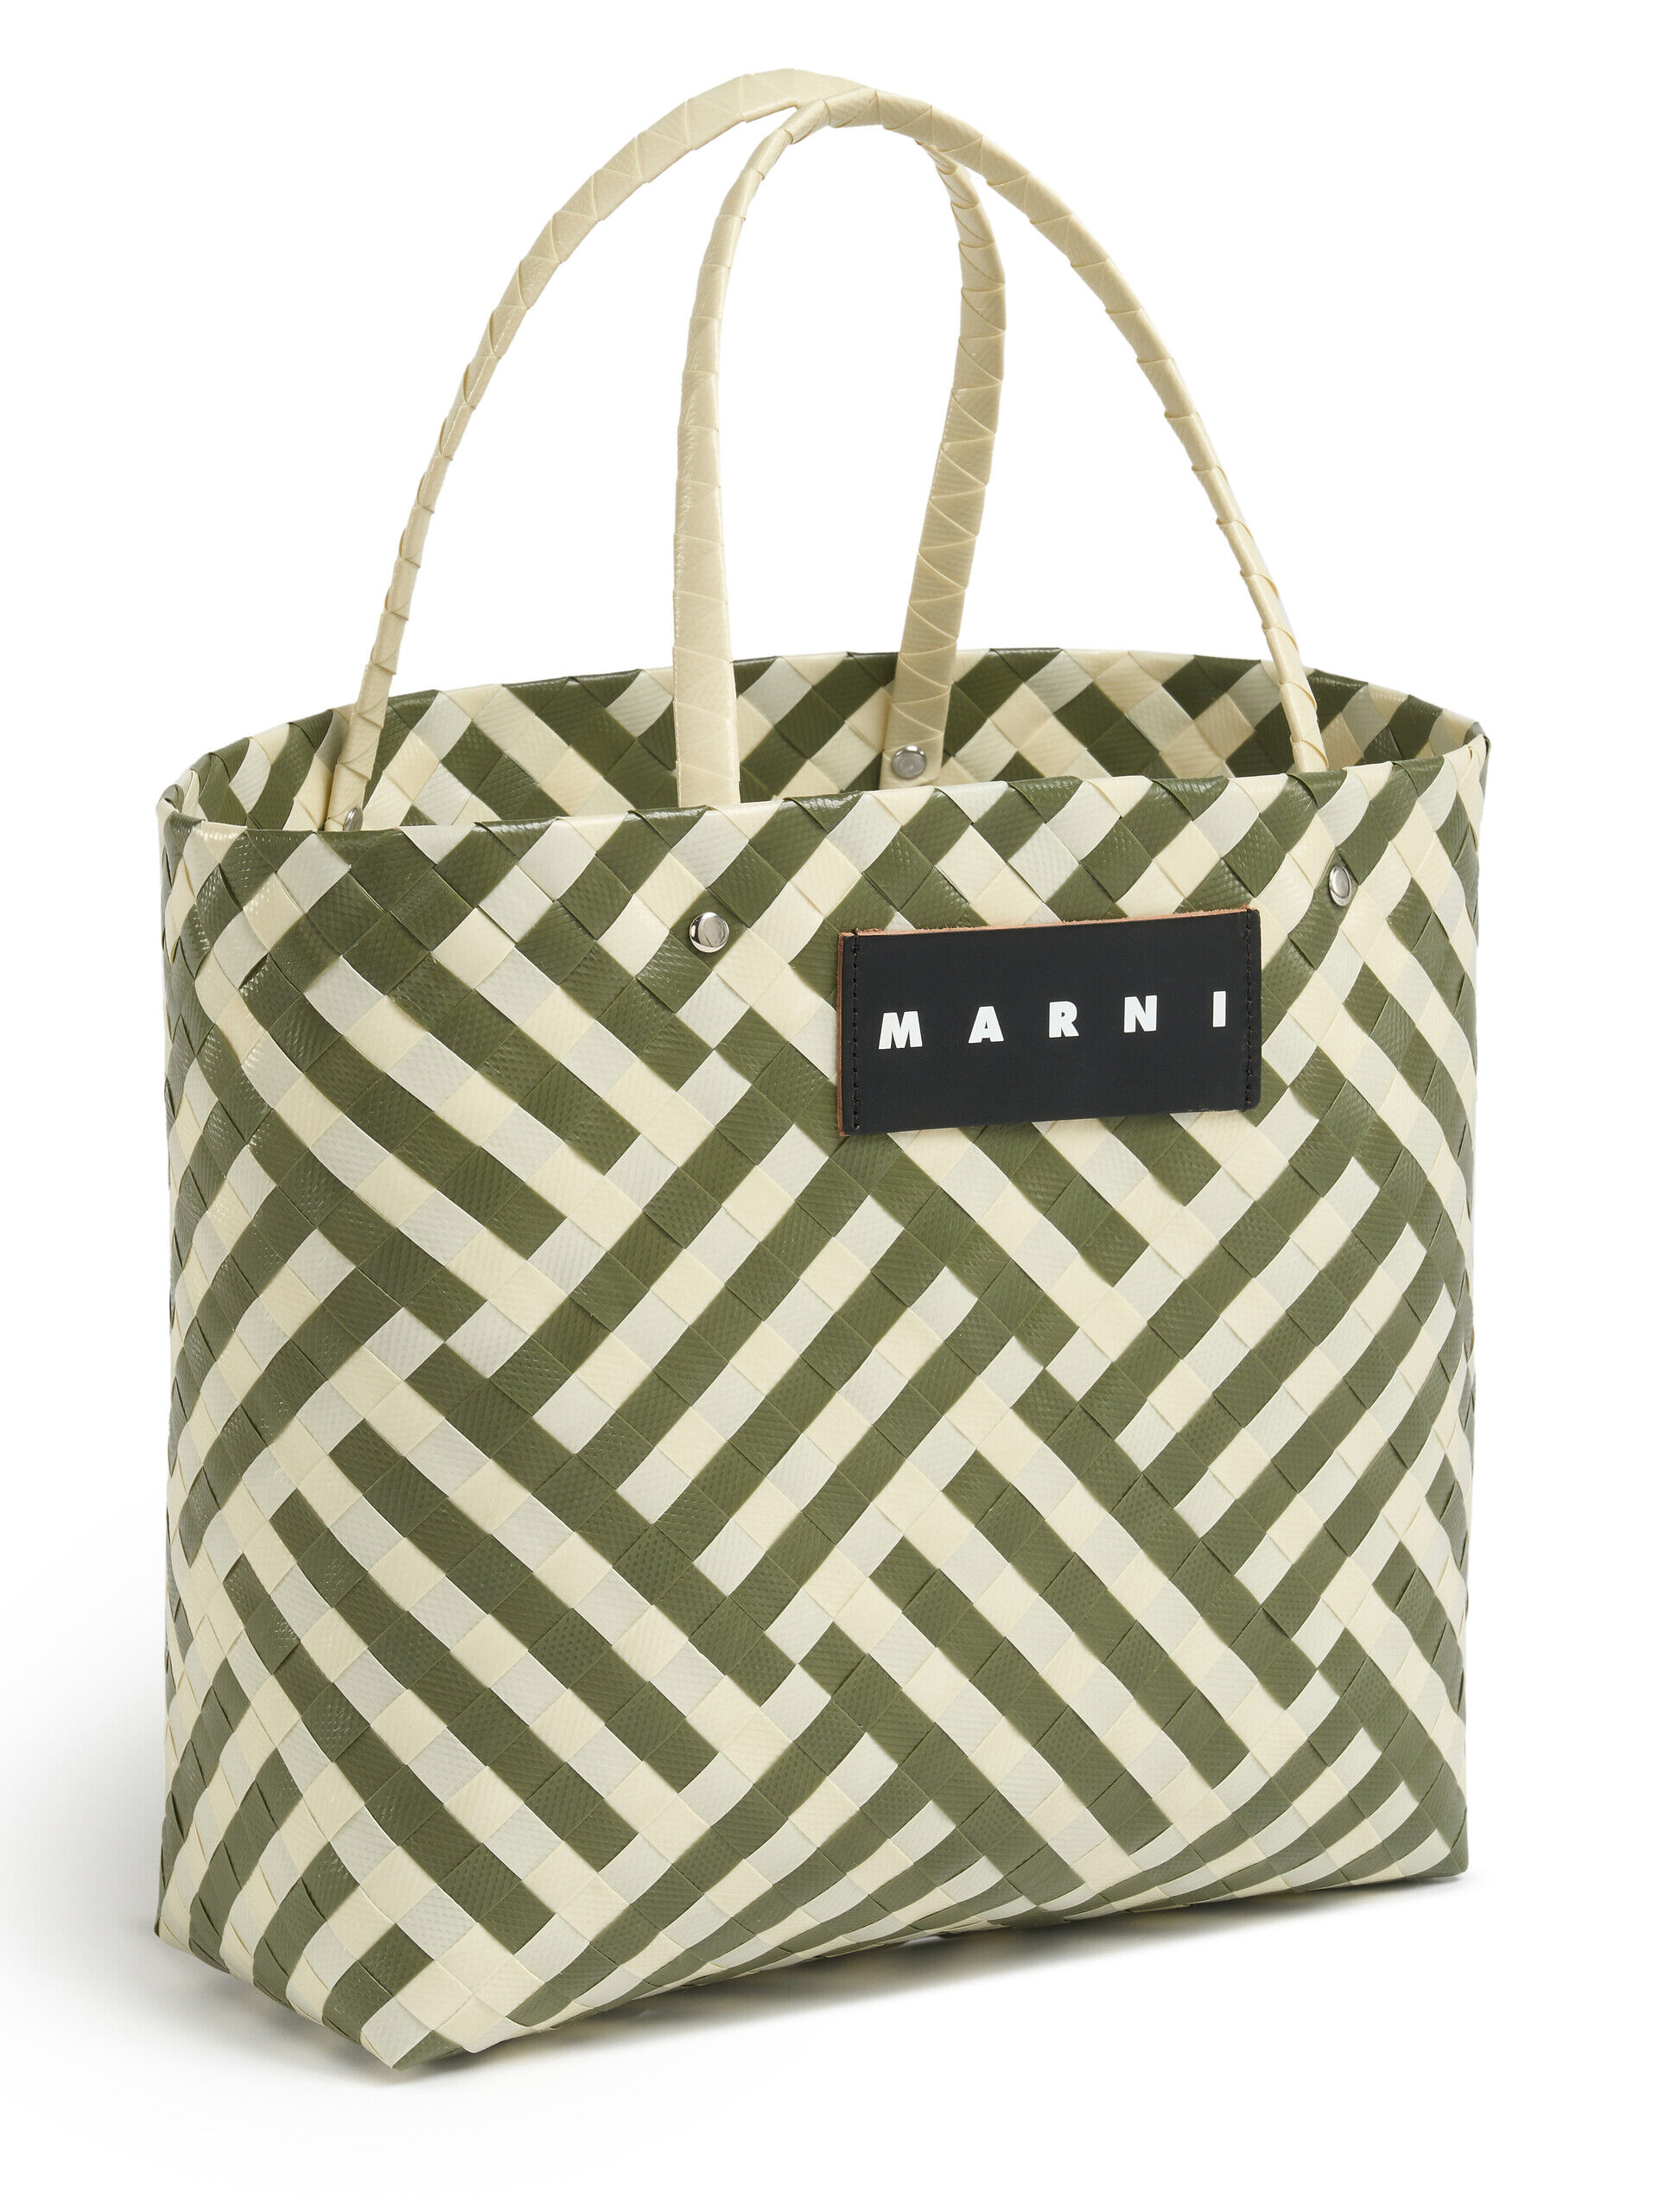 グリーン&ホワイト MARNI MARKET CHECK BASKET BAG | Marni